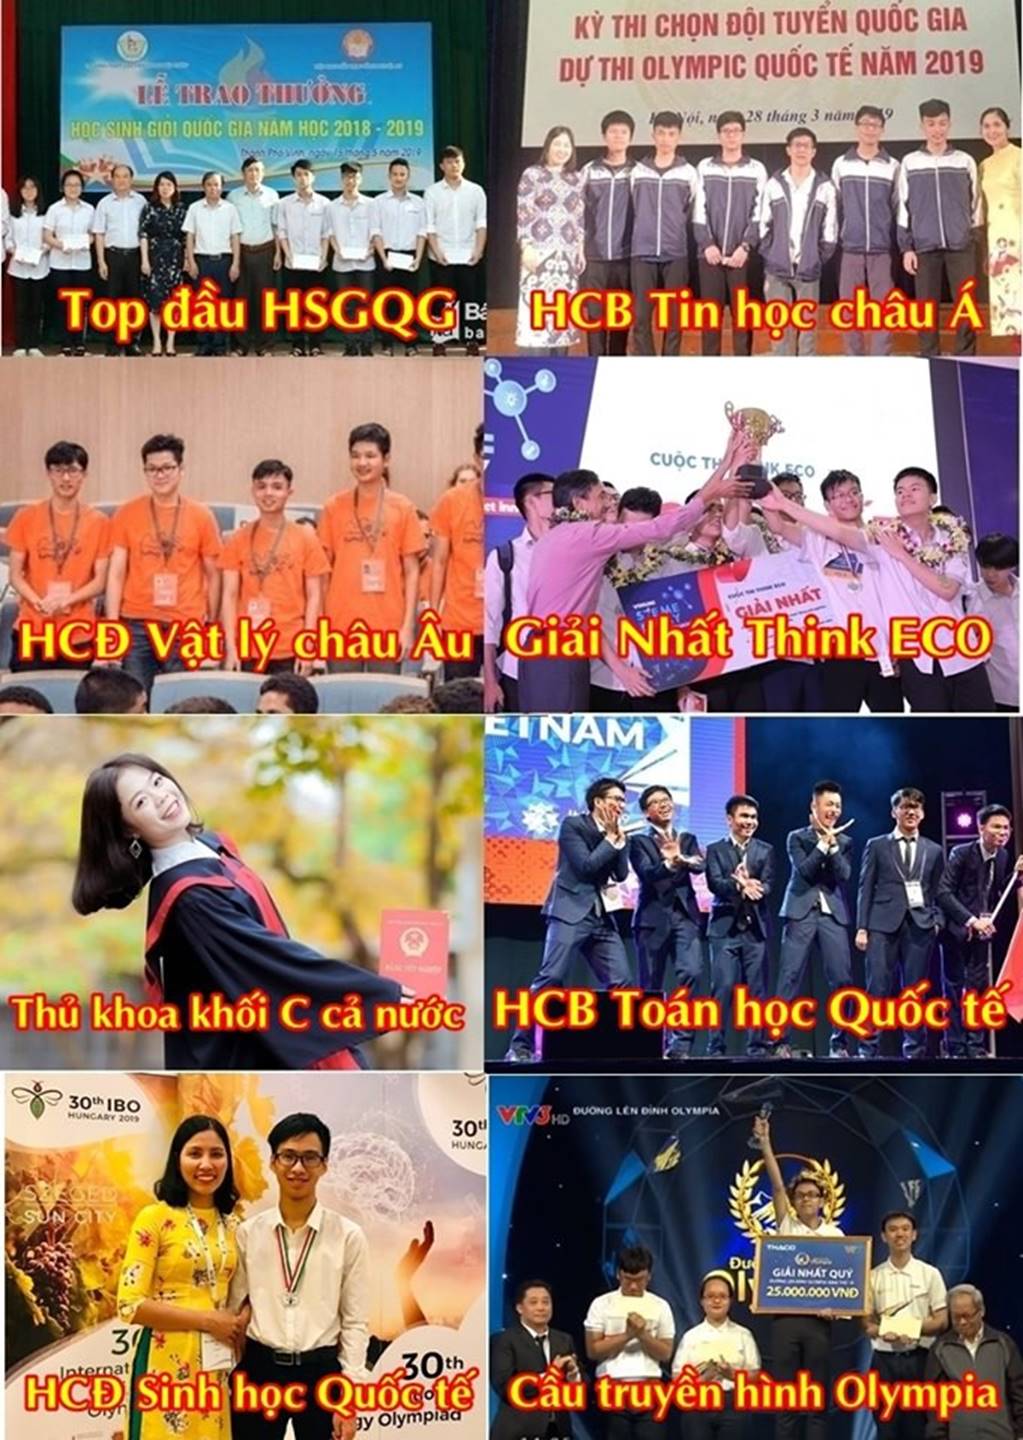 Ngôi trường cấp 3 giỏi hàng đầu Việt Nam: Có hàng chục huy chương quốc tế, thủ khoa khối C và cầu truyền hình Olympia chỉ trong một năm học-1